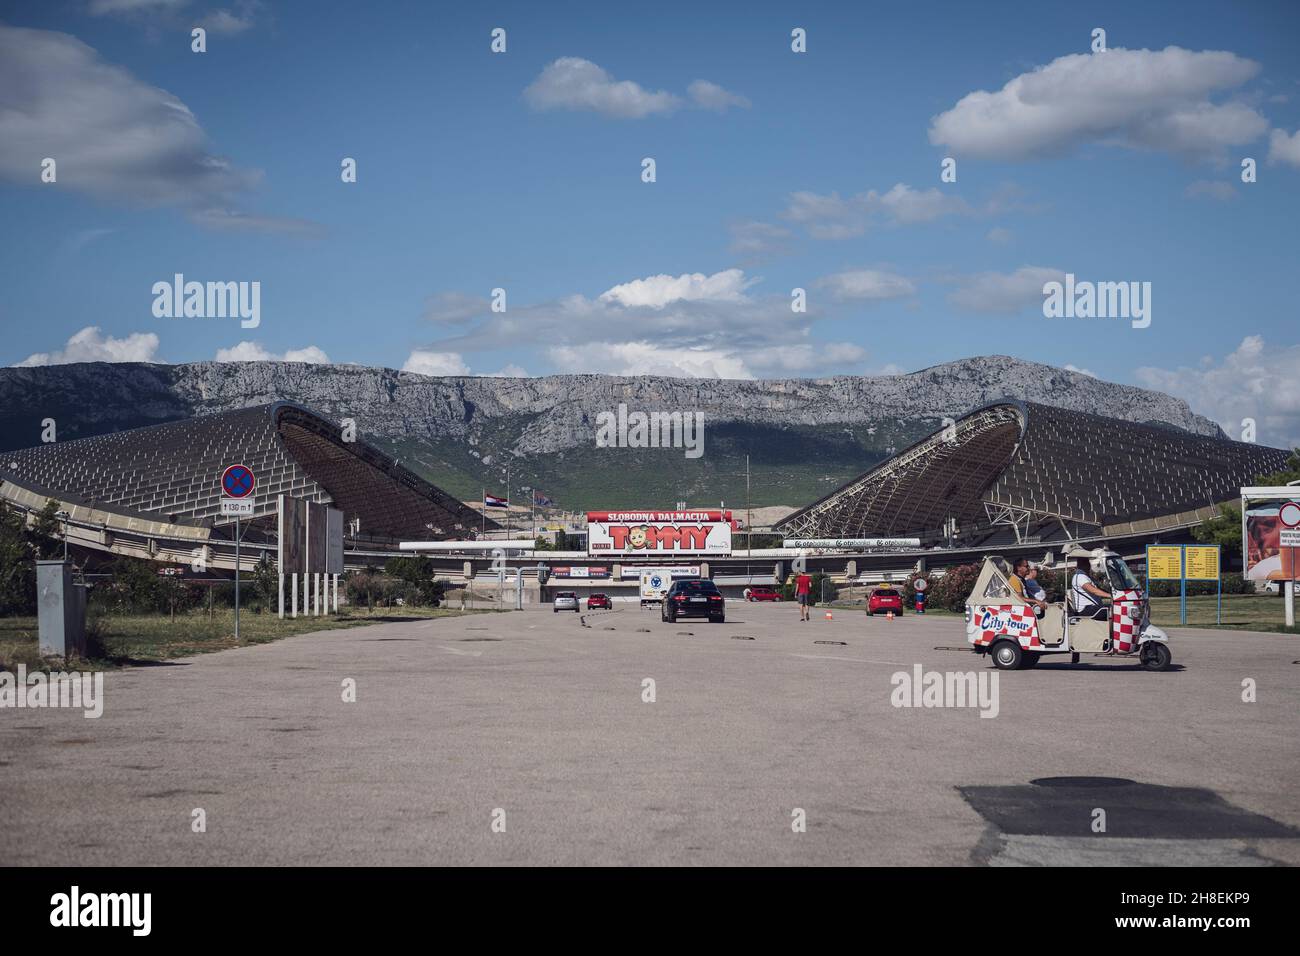 Außenansicht vom Stadion Poljud von Hajduk Split Foto Stock